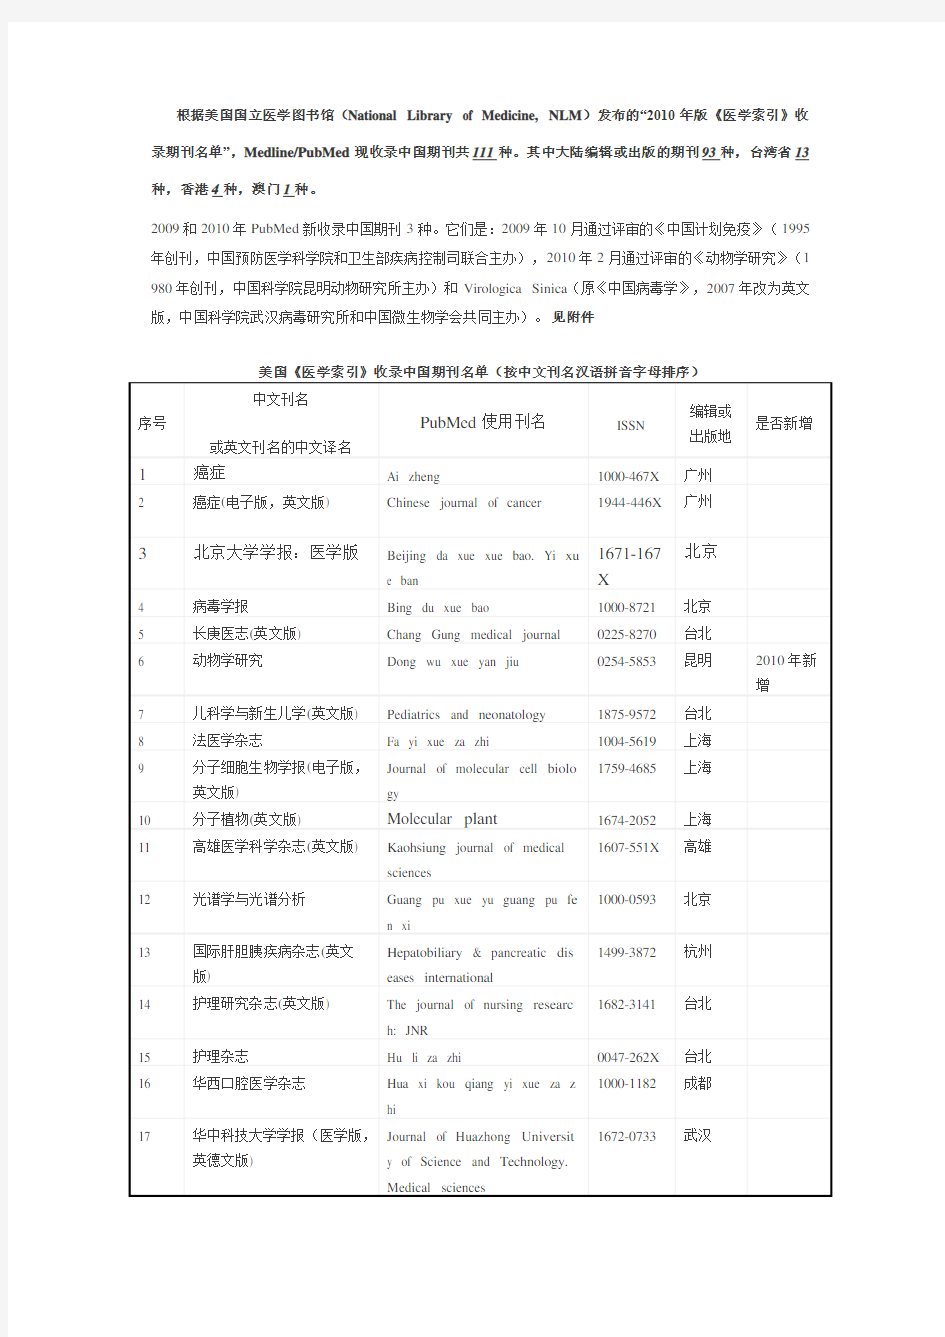 美国《医学索引》收录中国期刊名单(按中文刊名汉语拼音字母排序)